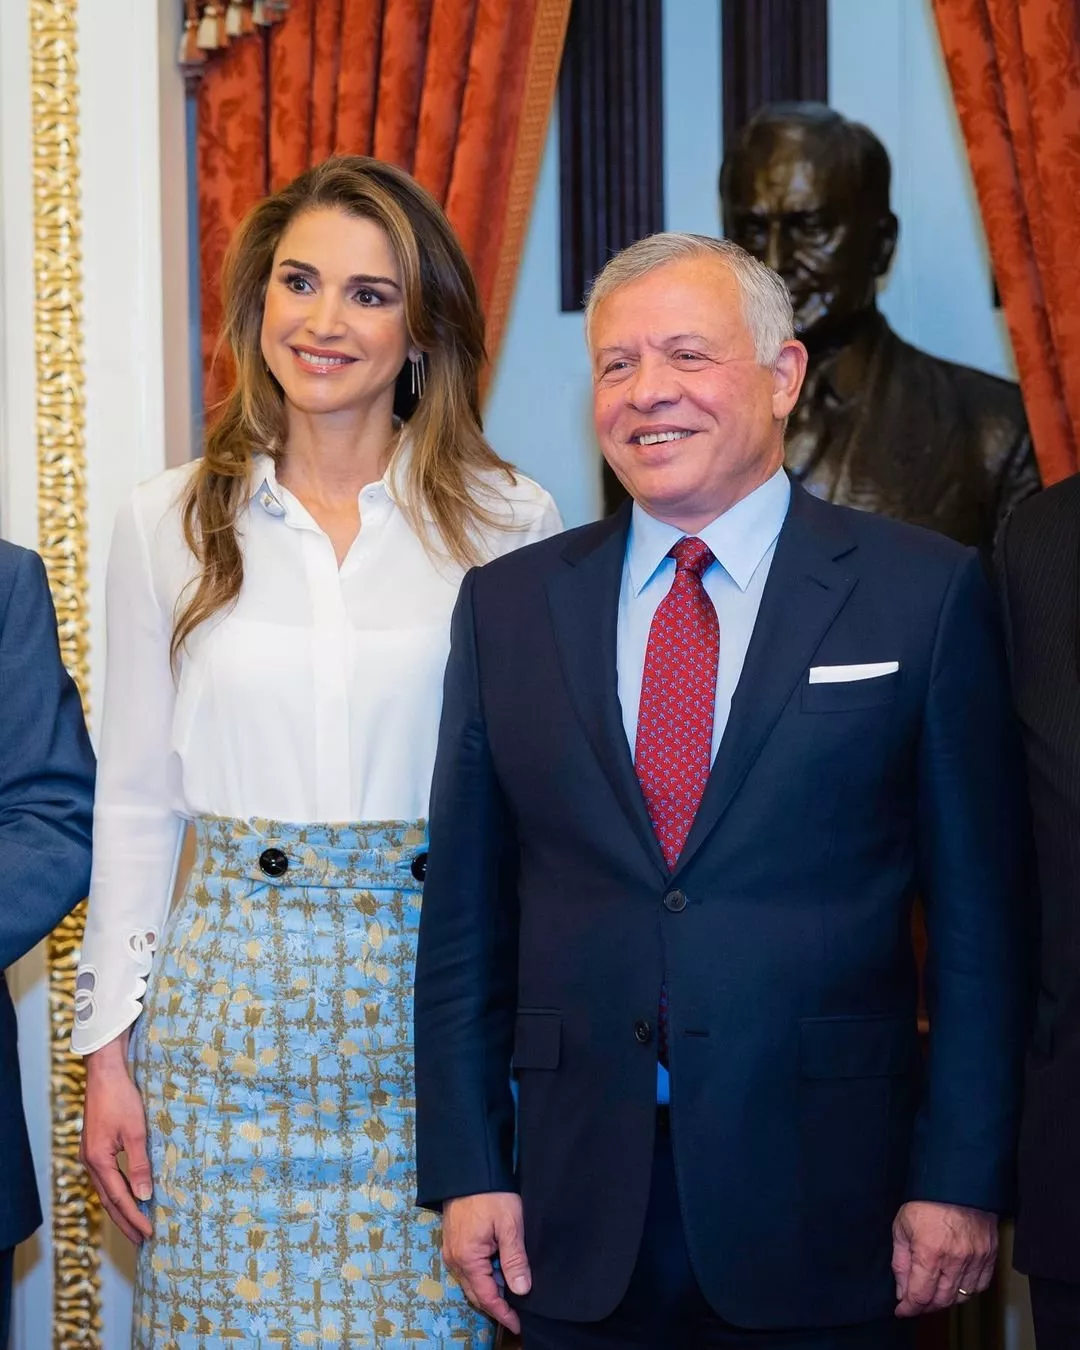 بأناقتها المعهودة، الملكة رانيا تنافس بإطلالاتها جيل بايدن